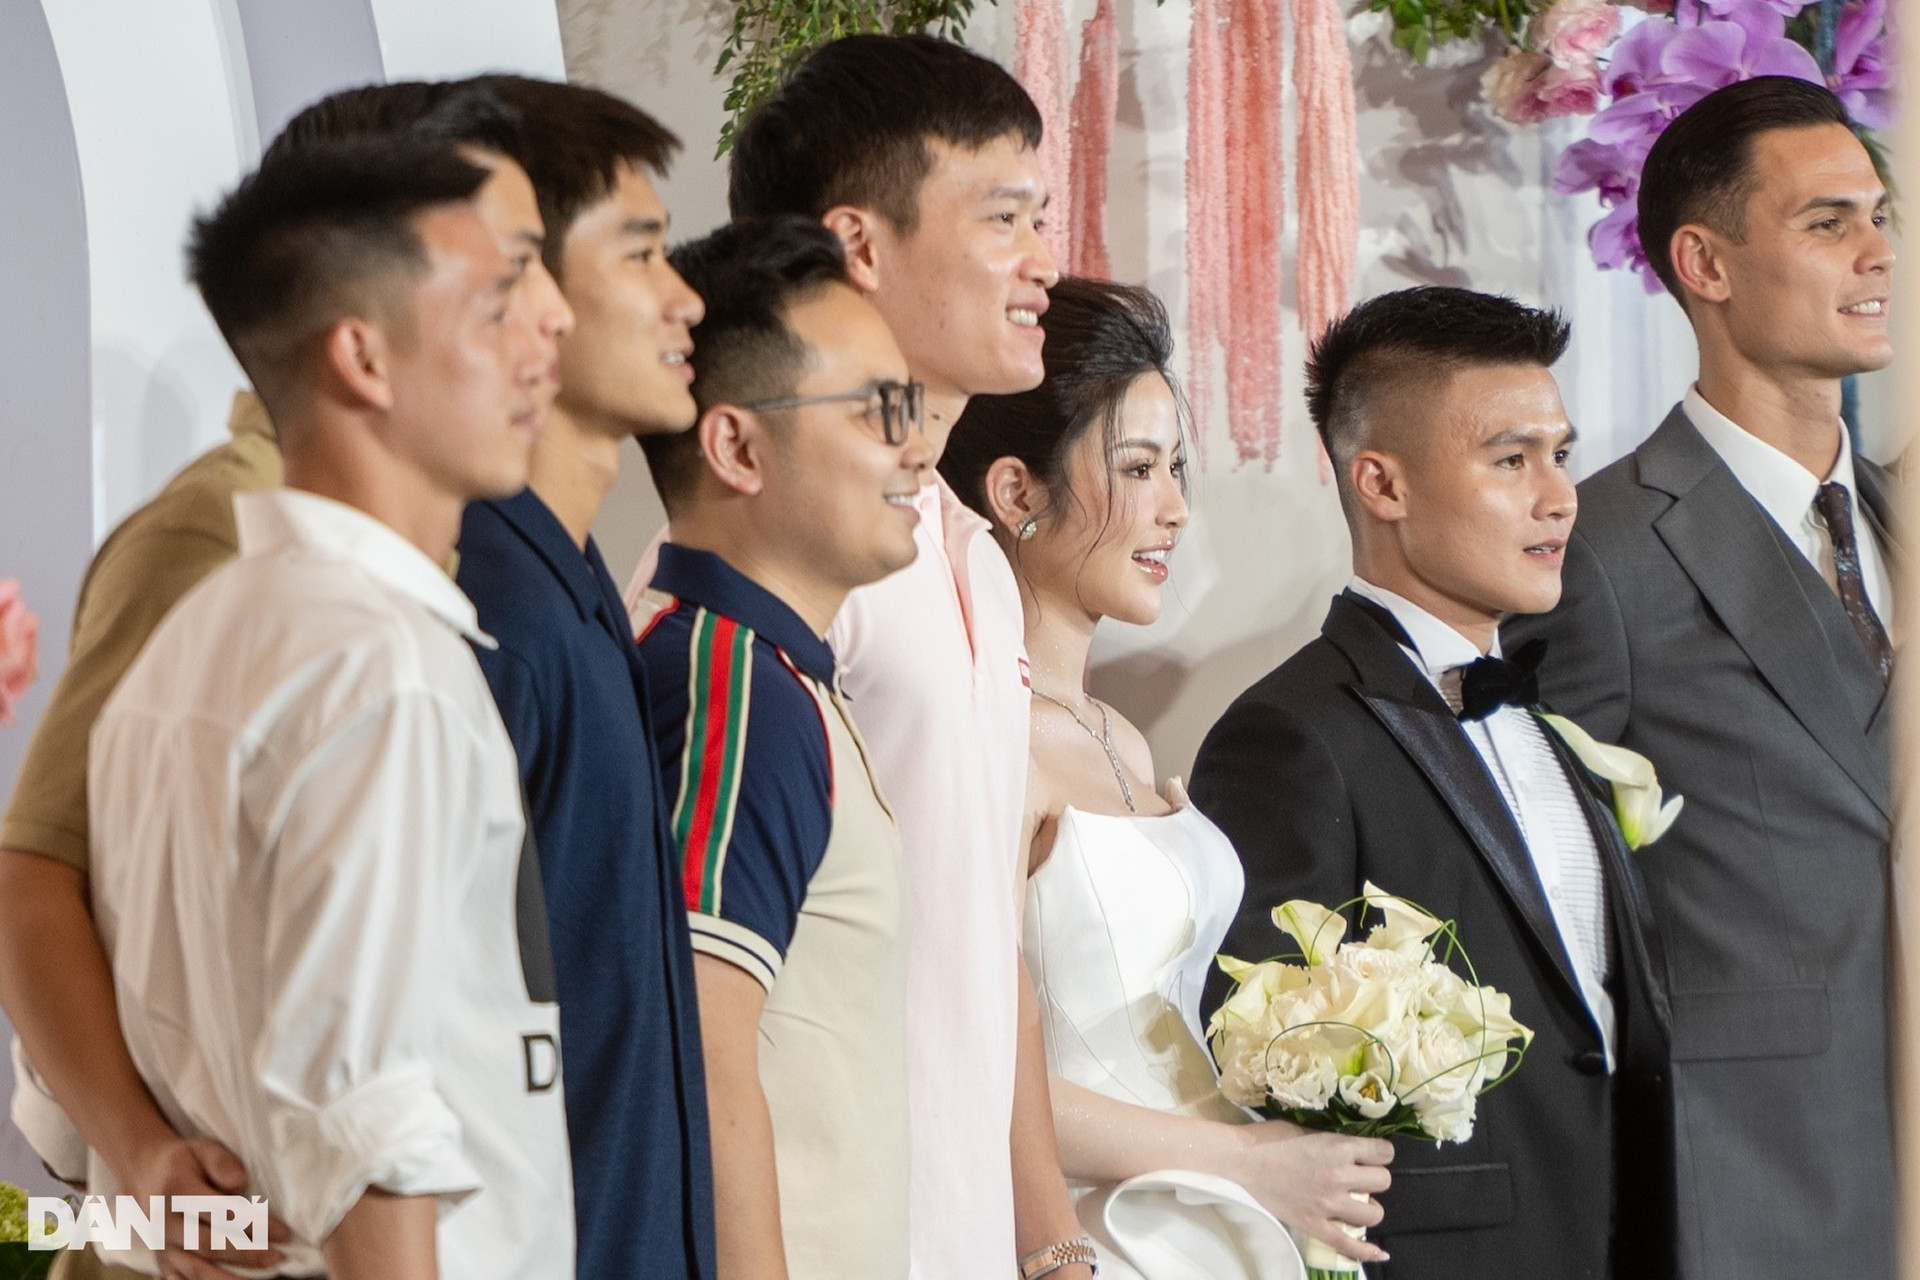 Đám cưới Quang Hải: Cô dâu - chú rể bất ngờ thông báo có em bé - 13